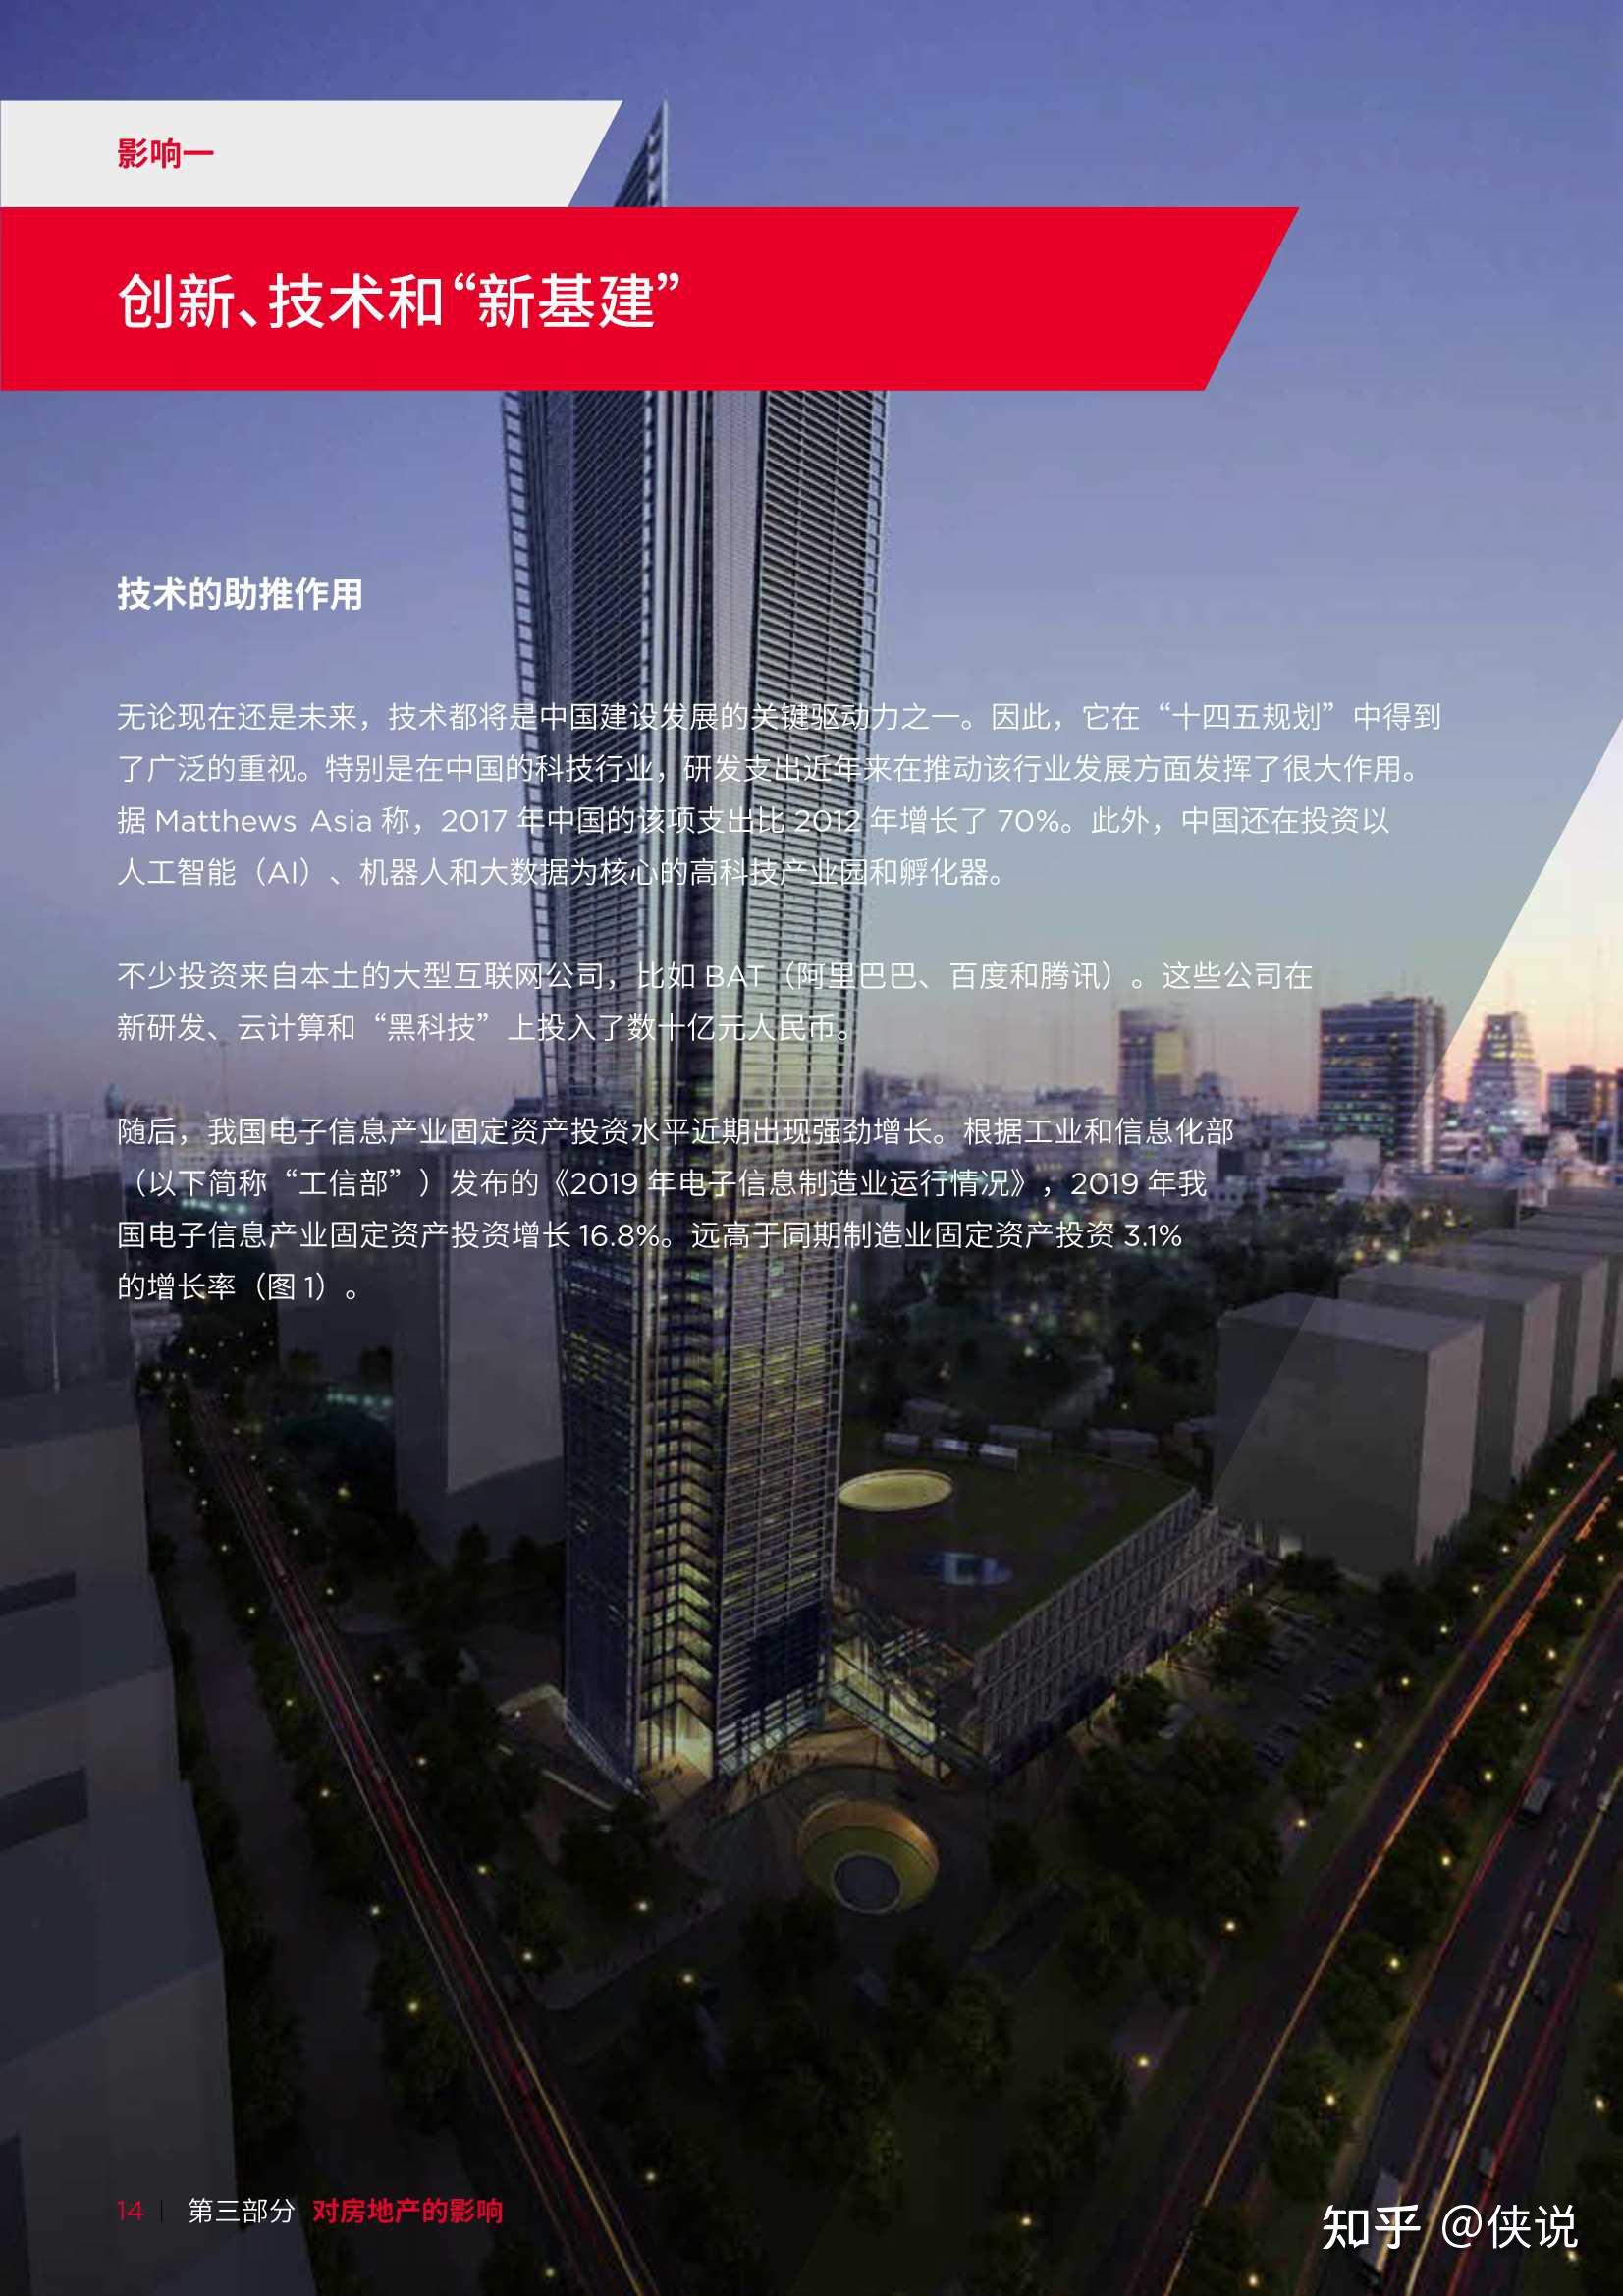 戴德梁行中国十四五规划展望房地产的未来172页